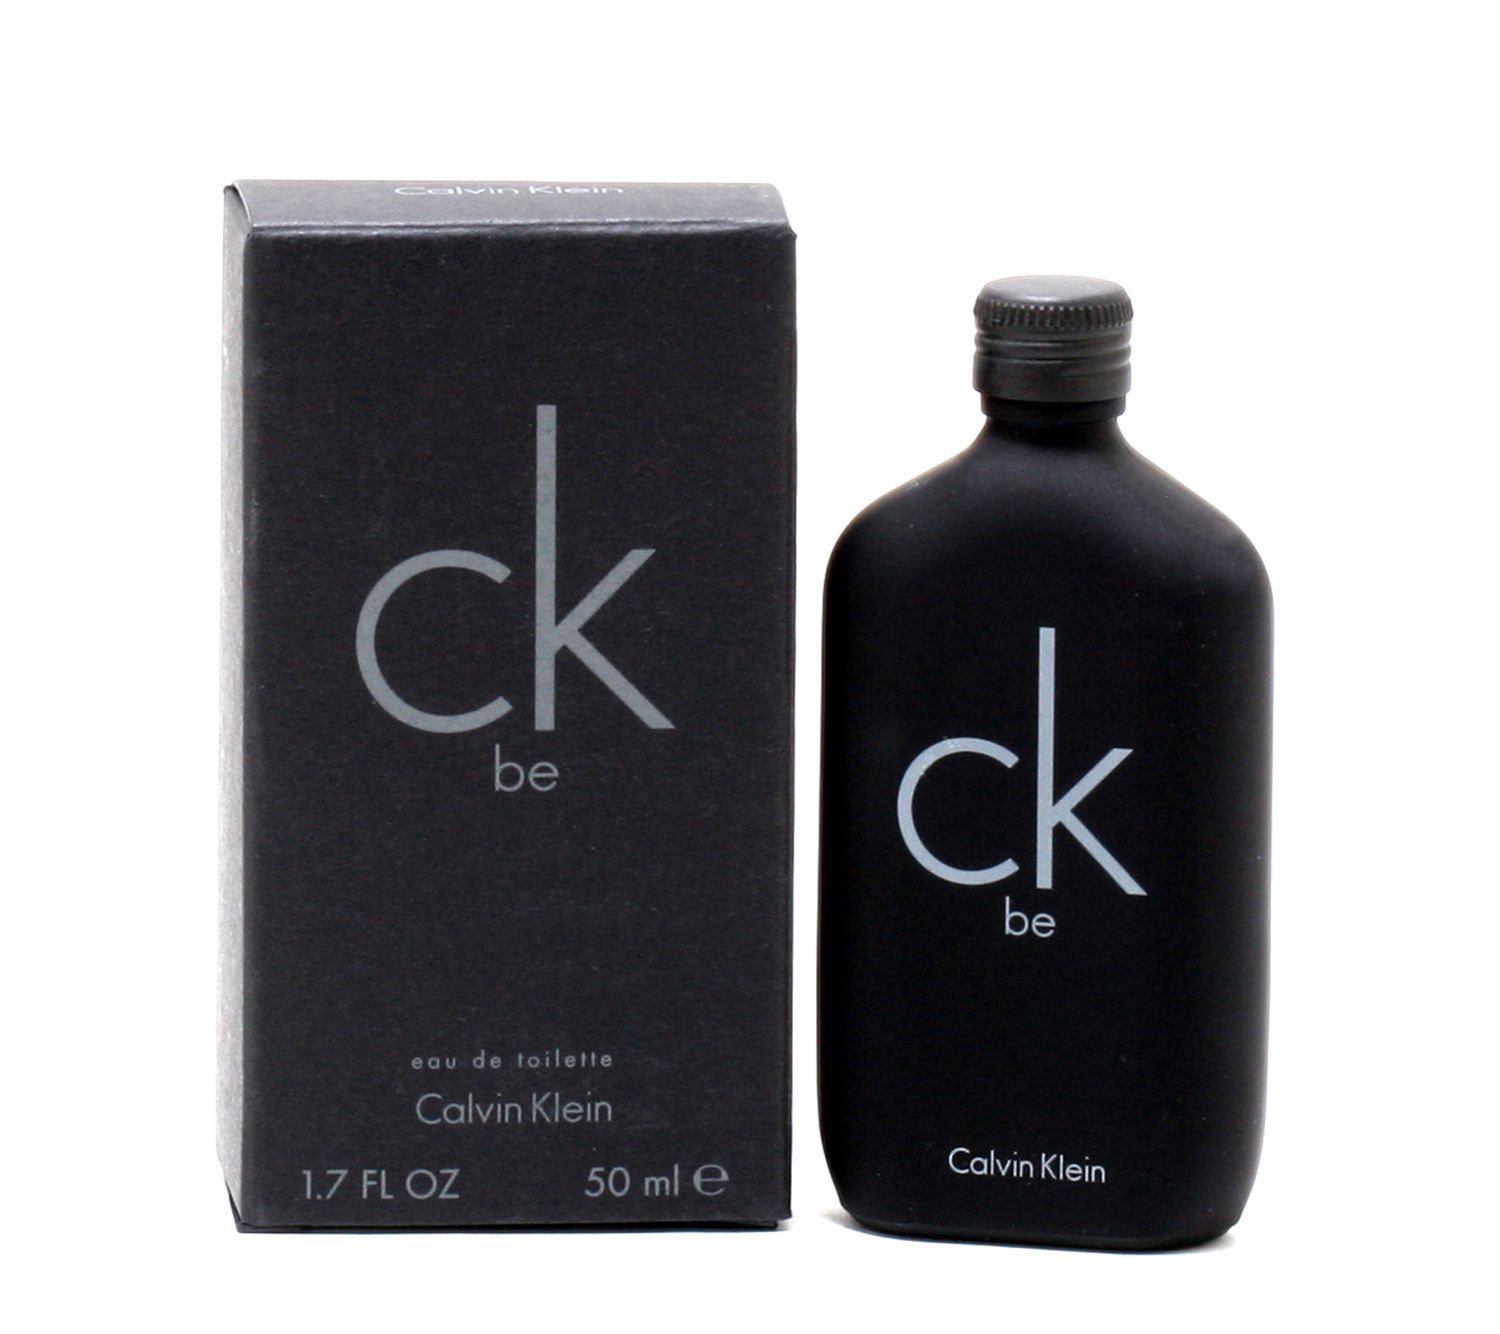 CK Be Eau de Toilette Spray (Unisex) by Calvin Klein 1.7 oz